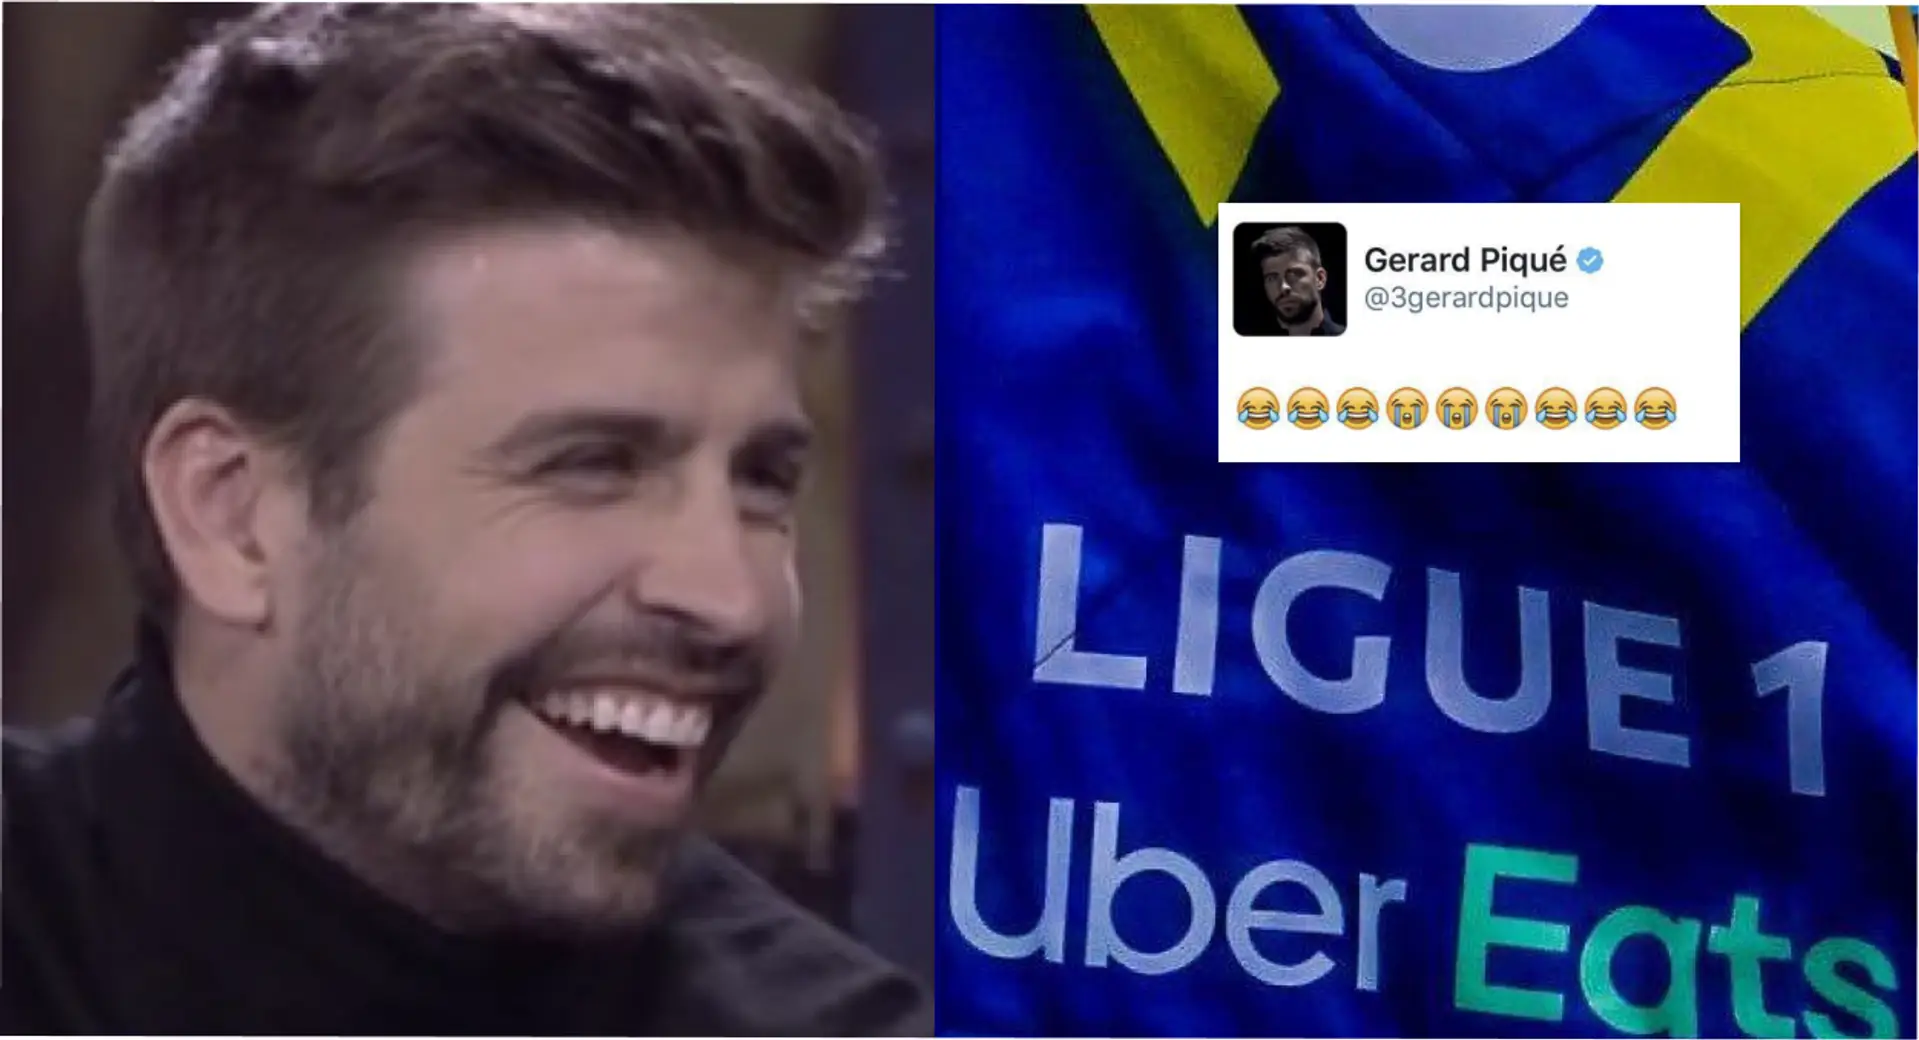 La Ligue 1 intenta burlarse de Gerard Piqué en Twitter, es humillada de inmediato